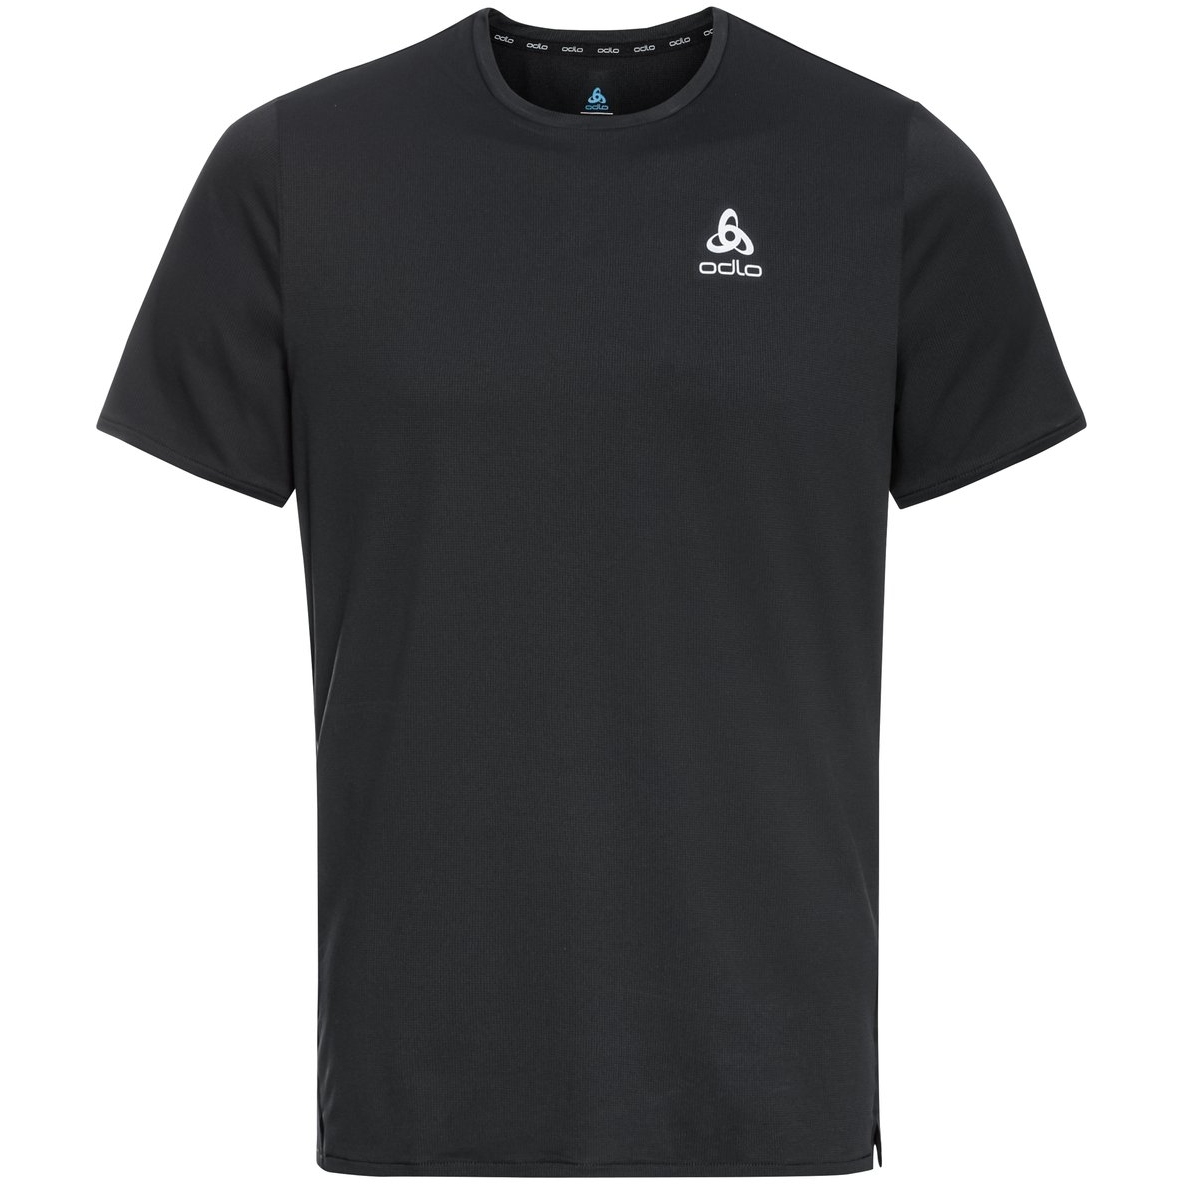 Produktbild von Odlo Zeroweight Chill-Tec T-Shirt Herren - schwarz